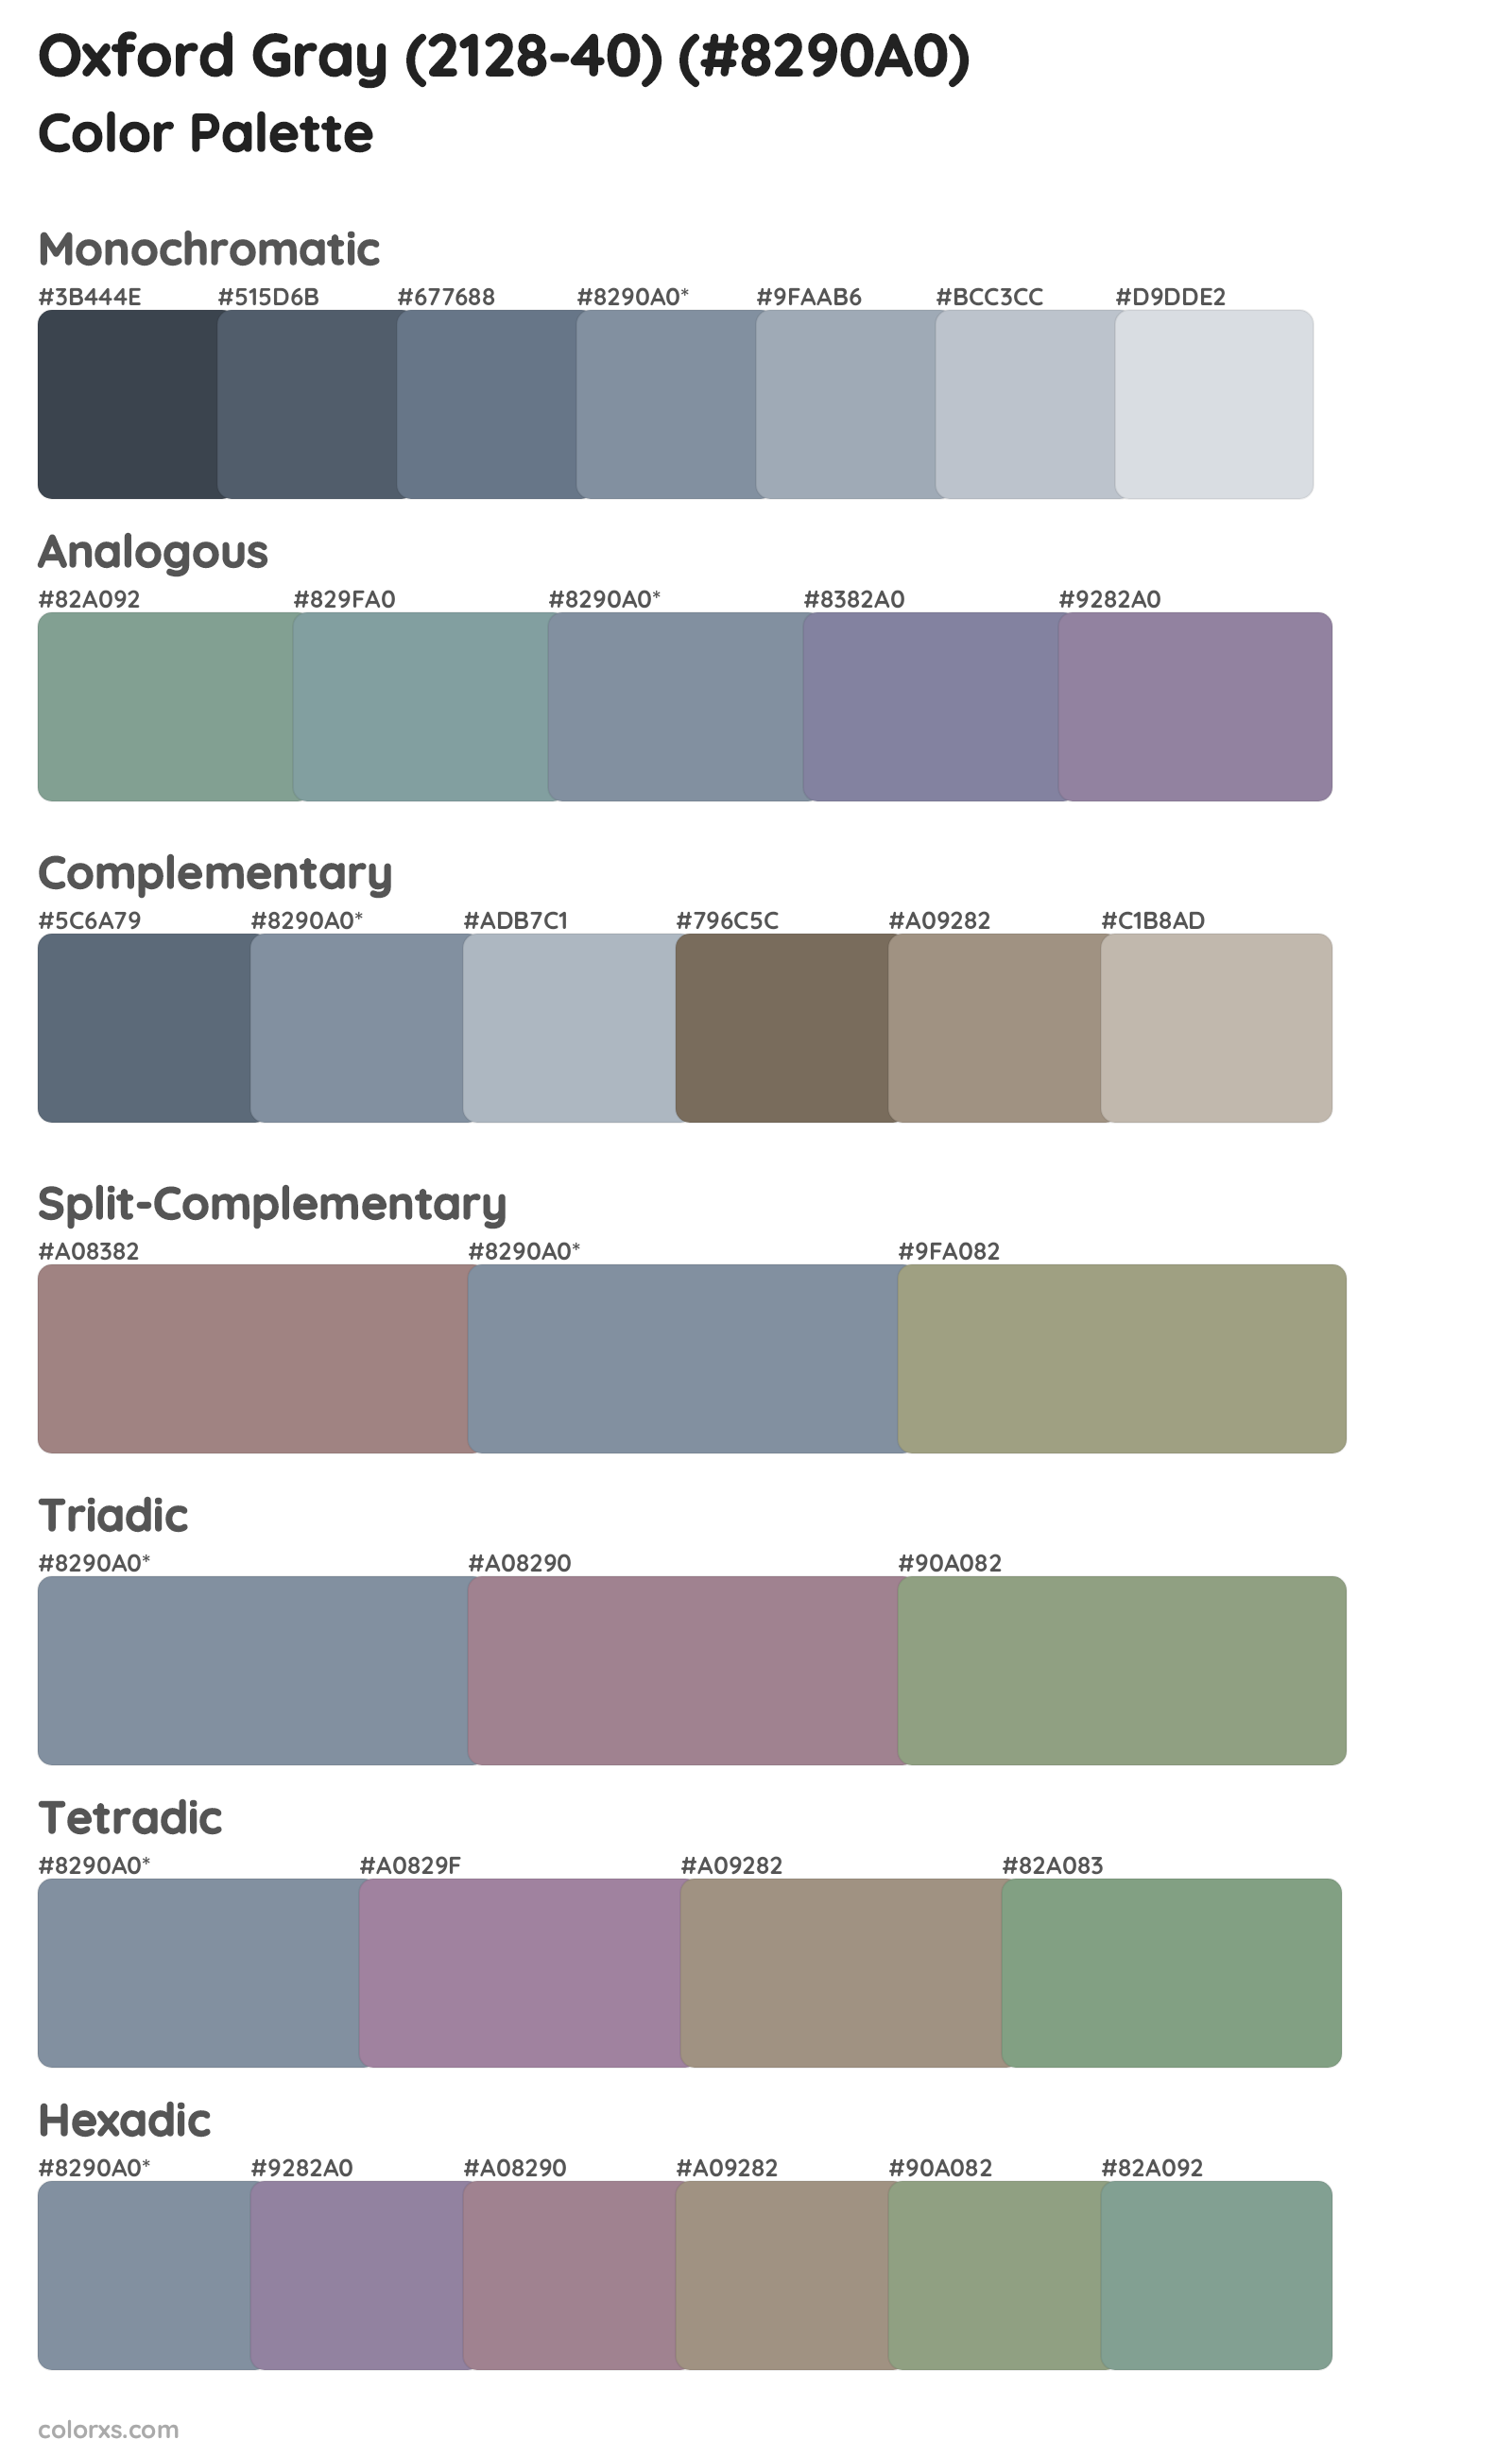 Oxford Gray (2128-40) Color Scheme Palettes